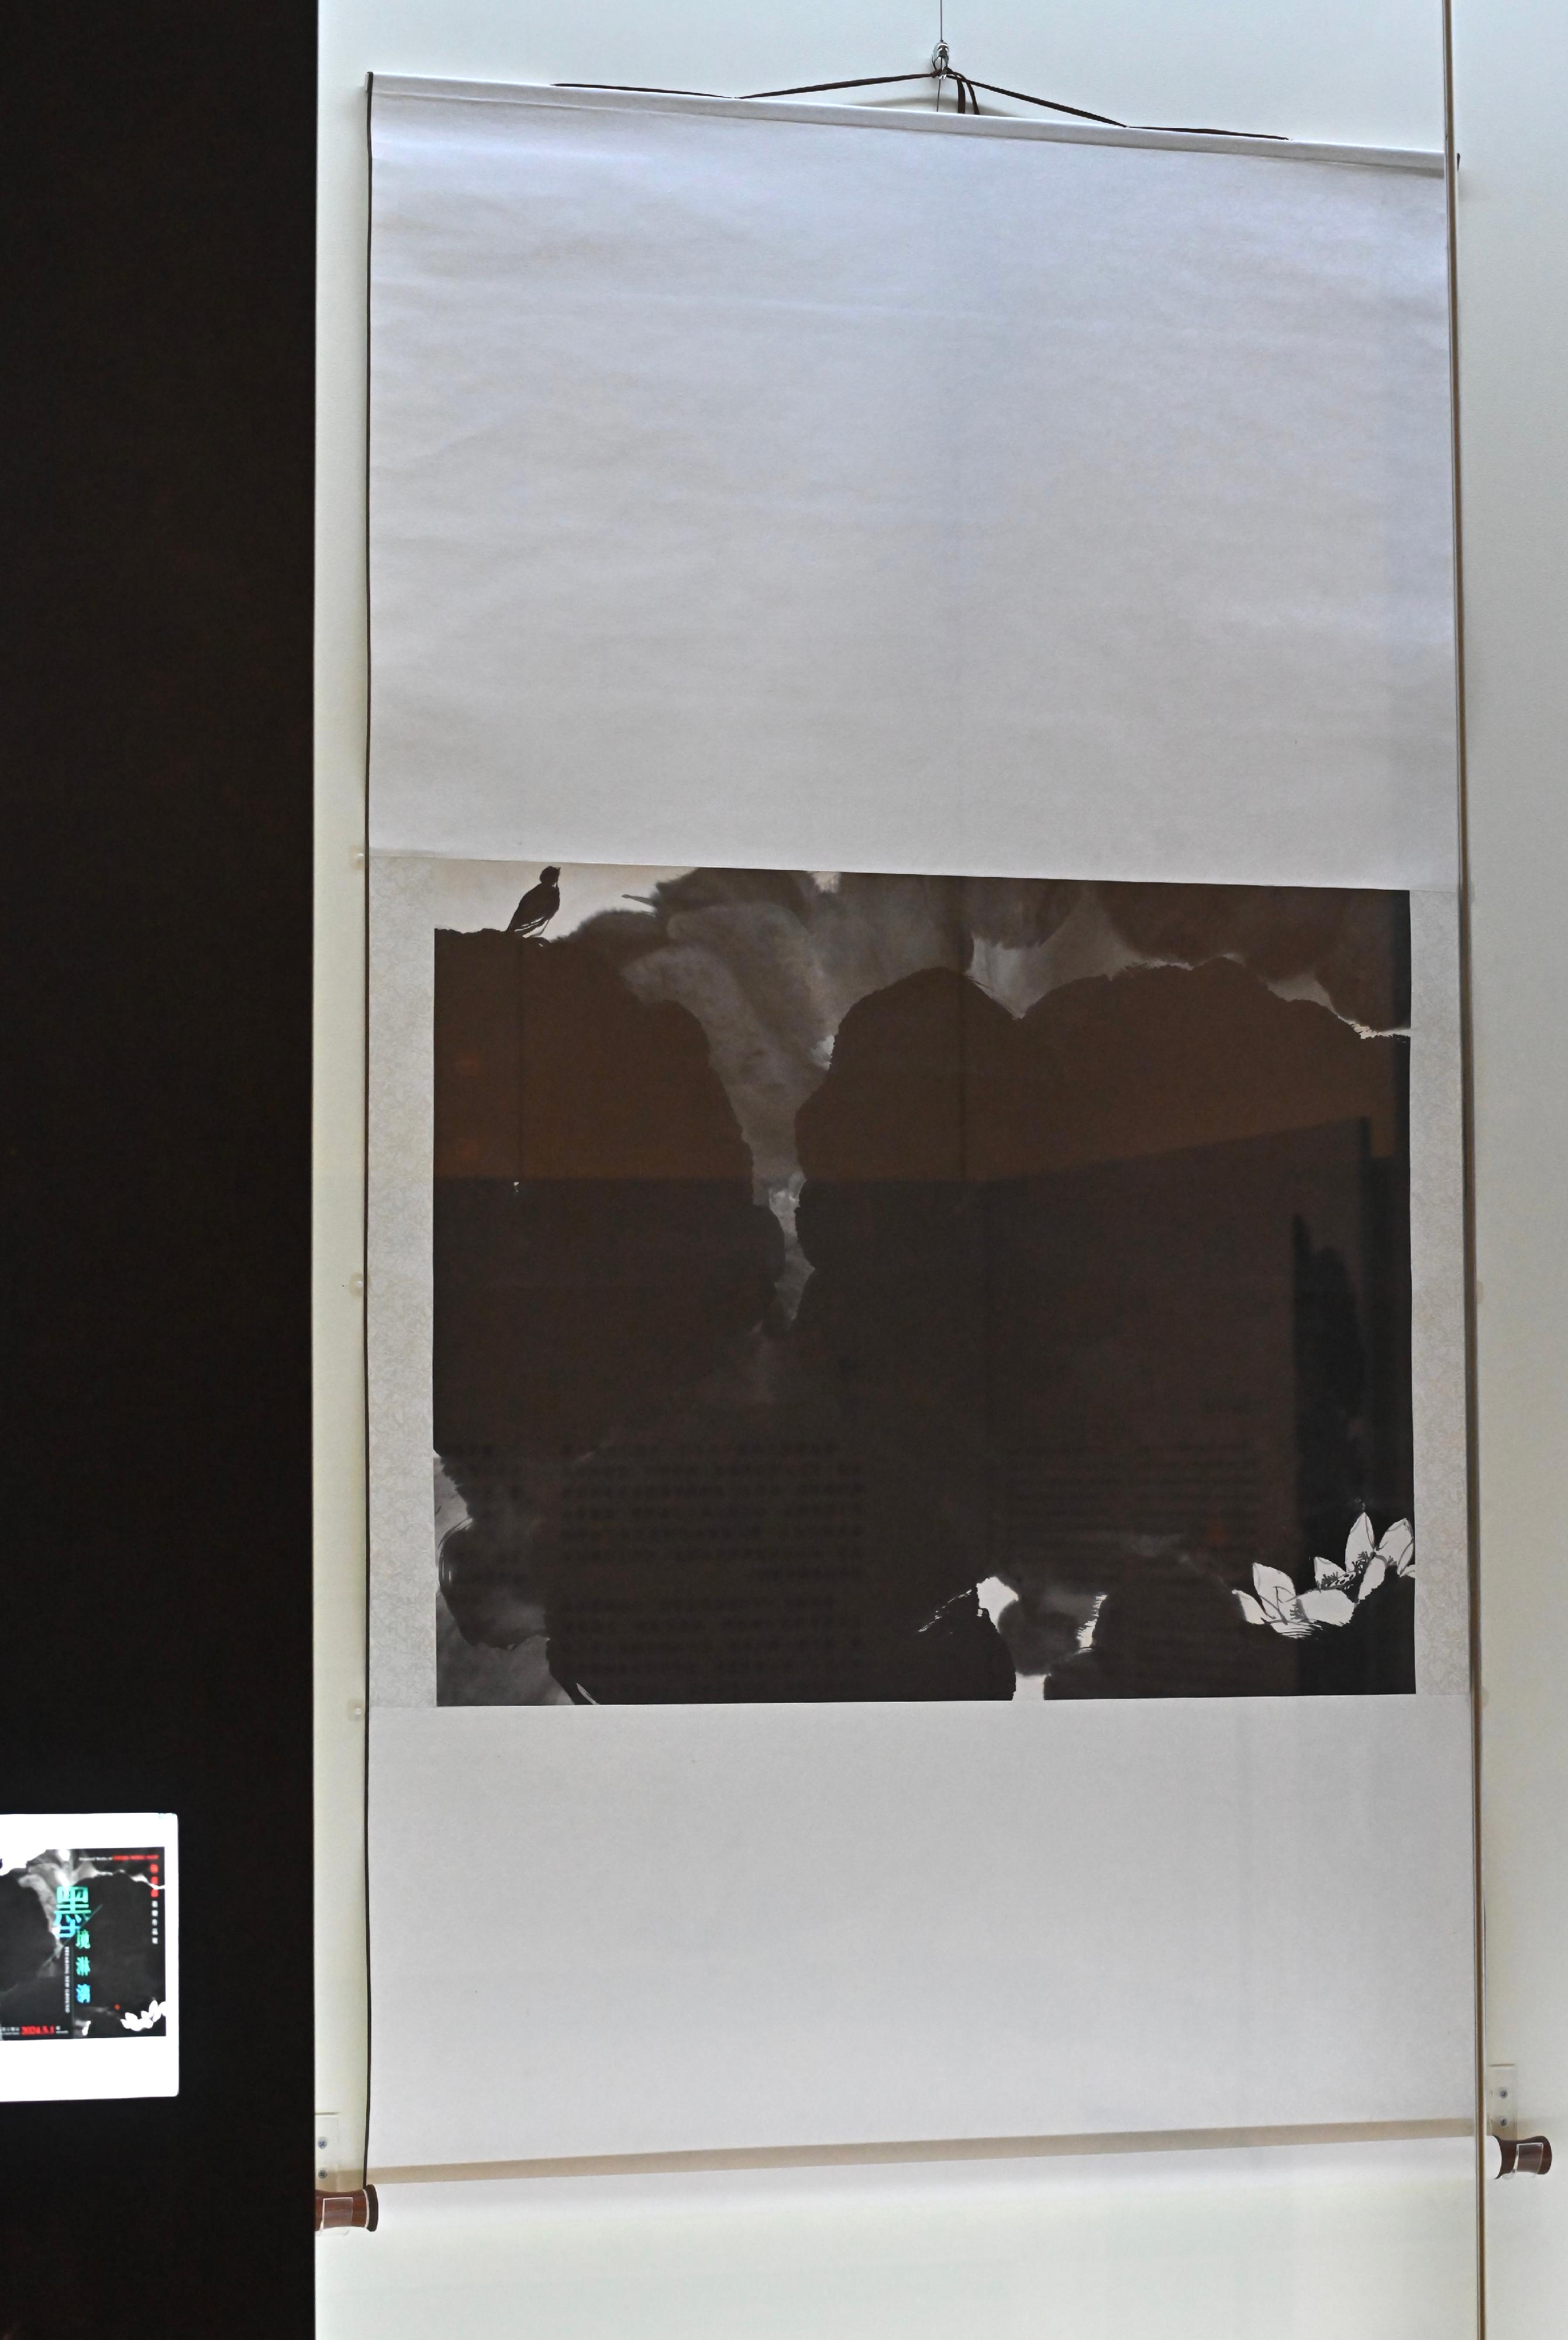 香港文化博物館明日（五月一日）起舉辦「墨境淋漓─陳榮森捐贈作品展」。圖示嶺南畫派畫家陳榮森的作品《荷花小鳥》。